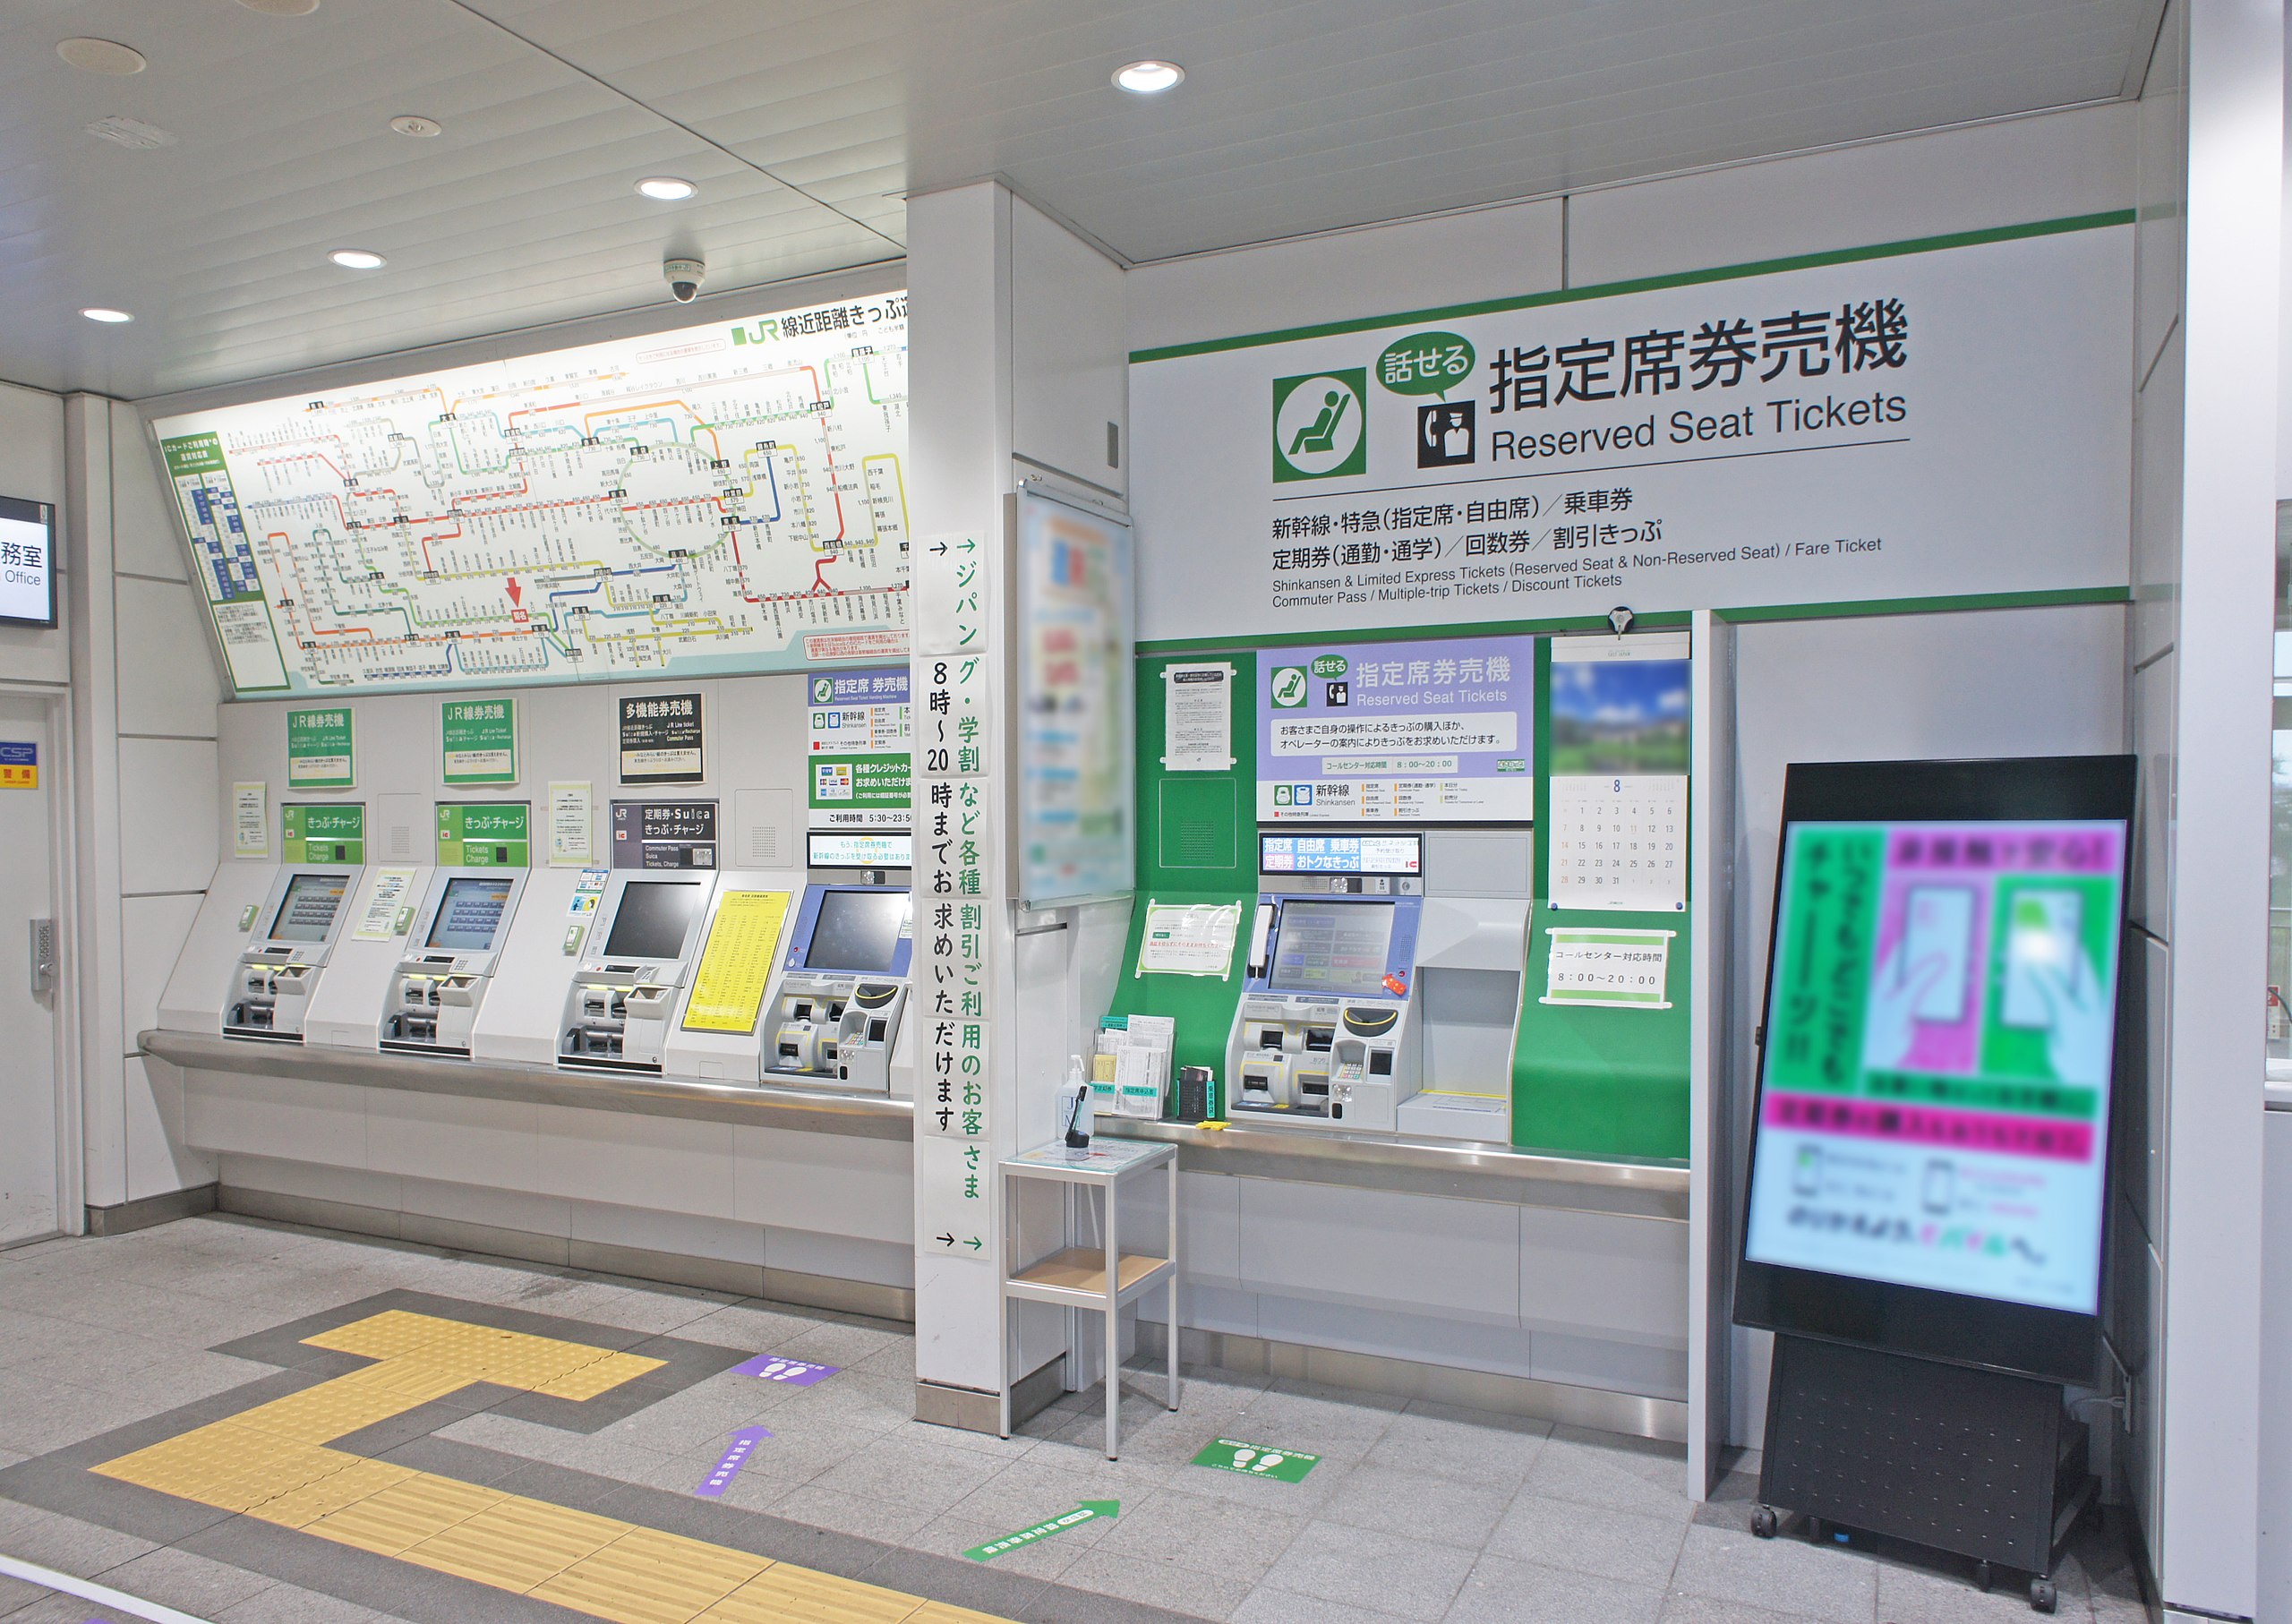 ファイル:JR East Kikuna Station Vending Machine.jpg - Wikipedia